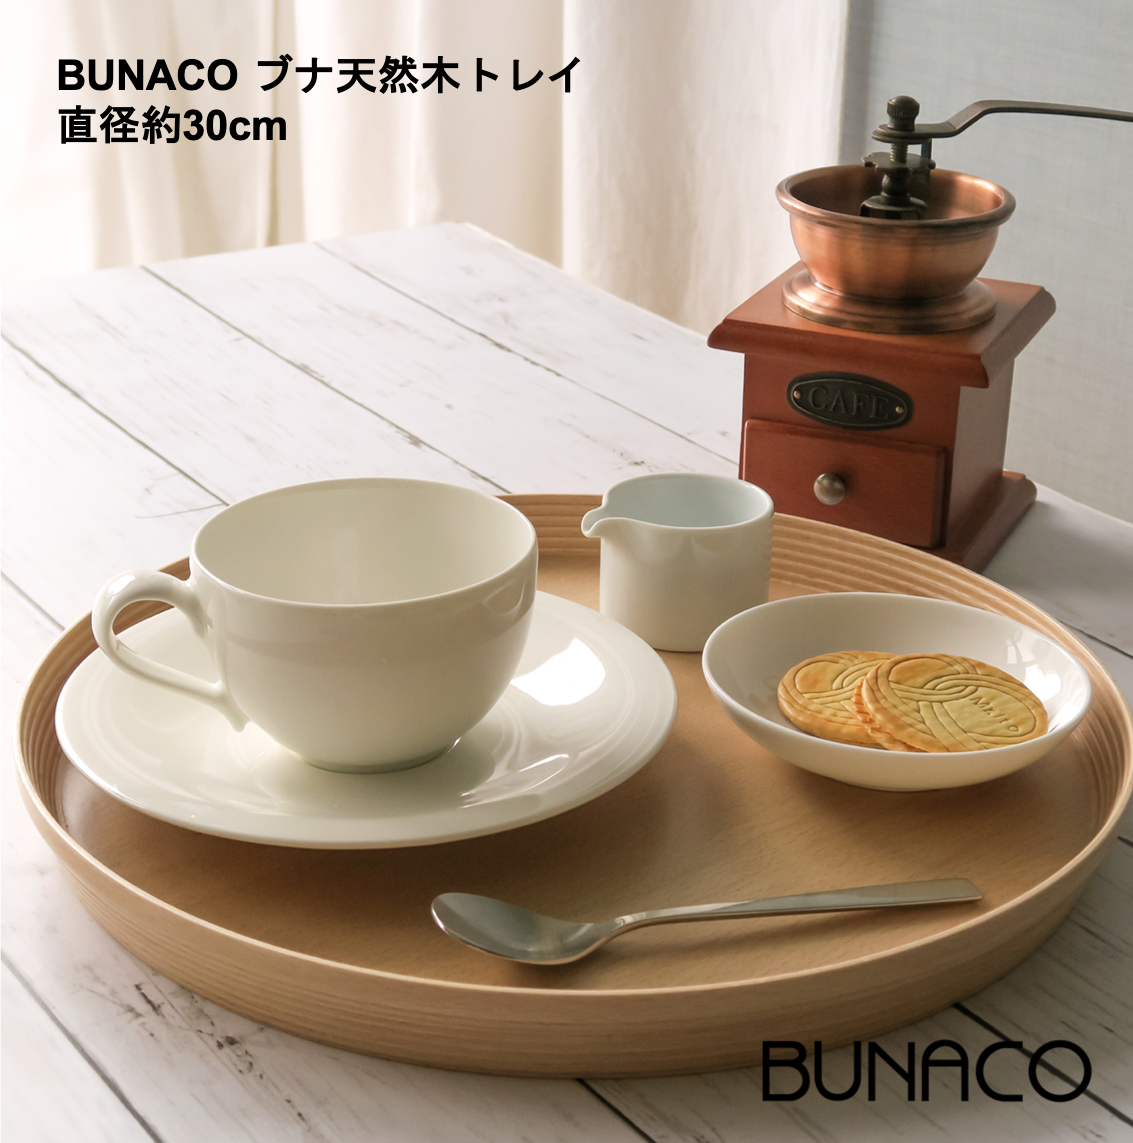 新着商品 ブナコ 角型トレー BUNACO テーブル用品